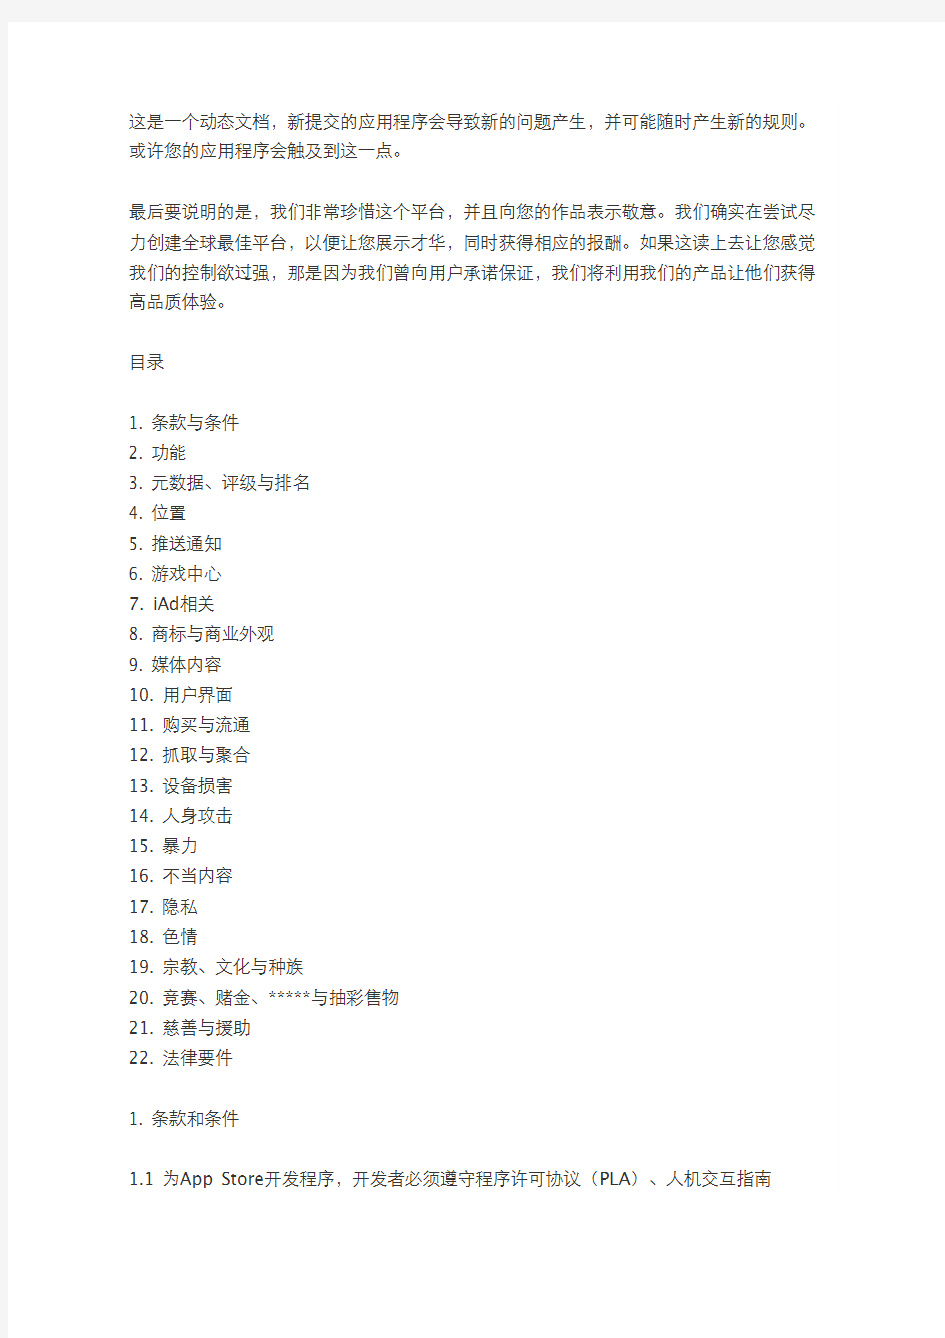 苹果应用商店审核指南(中文版)-感谢译言网 - 苹果官方应用审核标准-中文版苹果官方应用审核标准